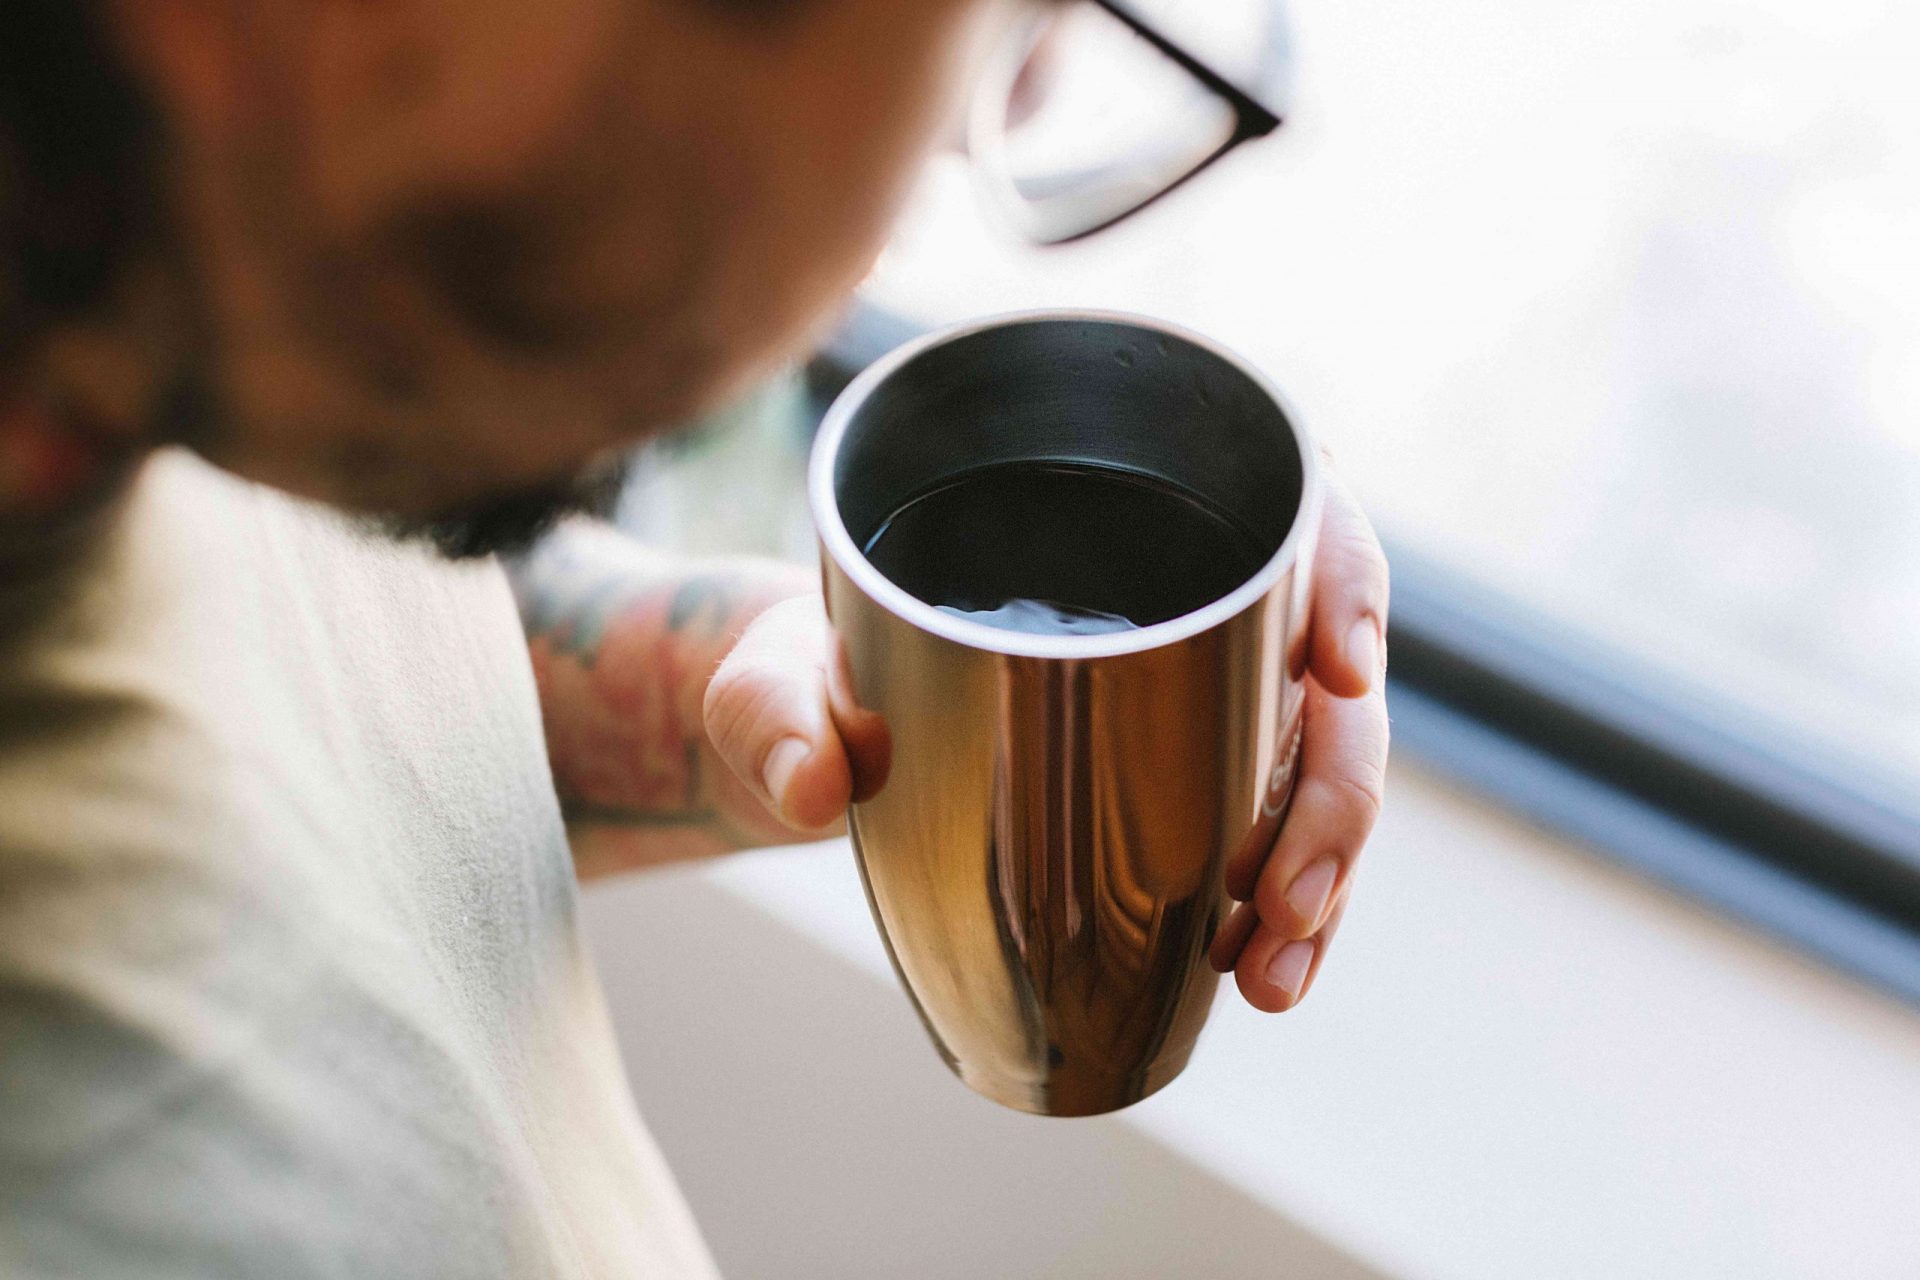 persona con gafas mira una taza de café caliente en un vaso reutilizable